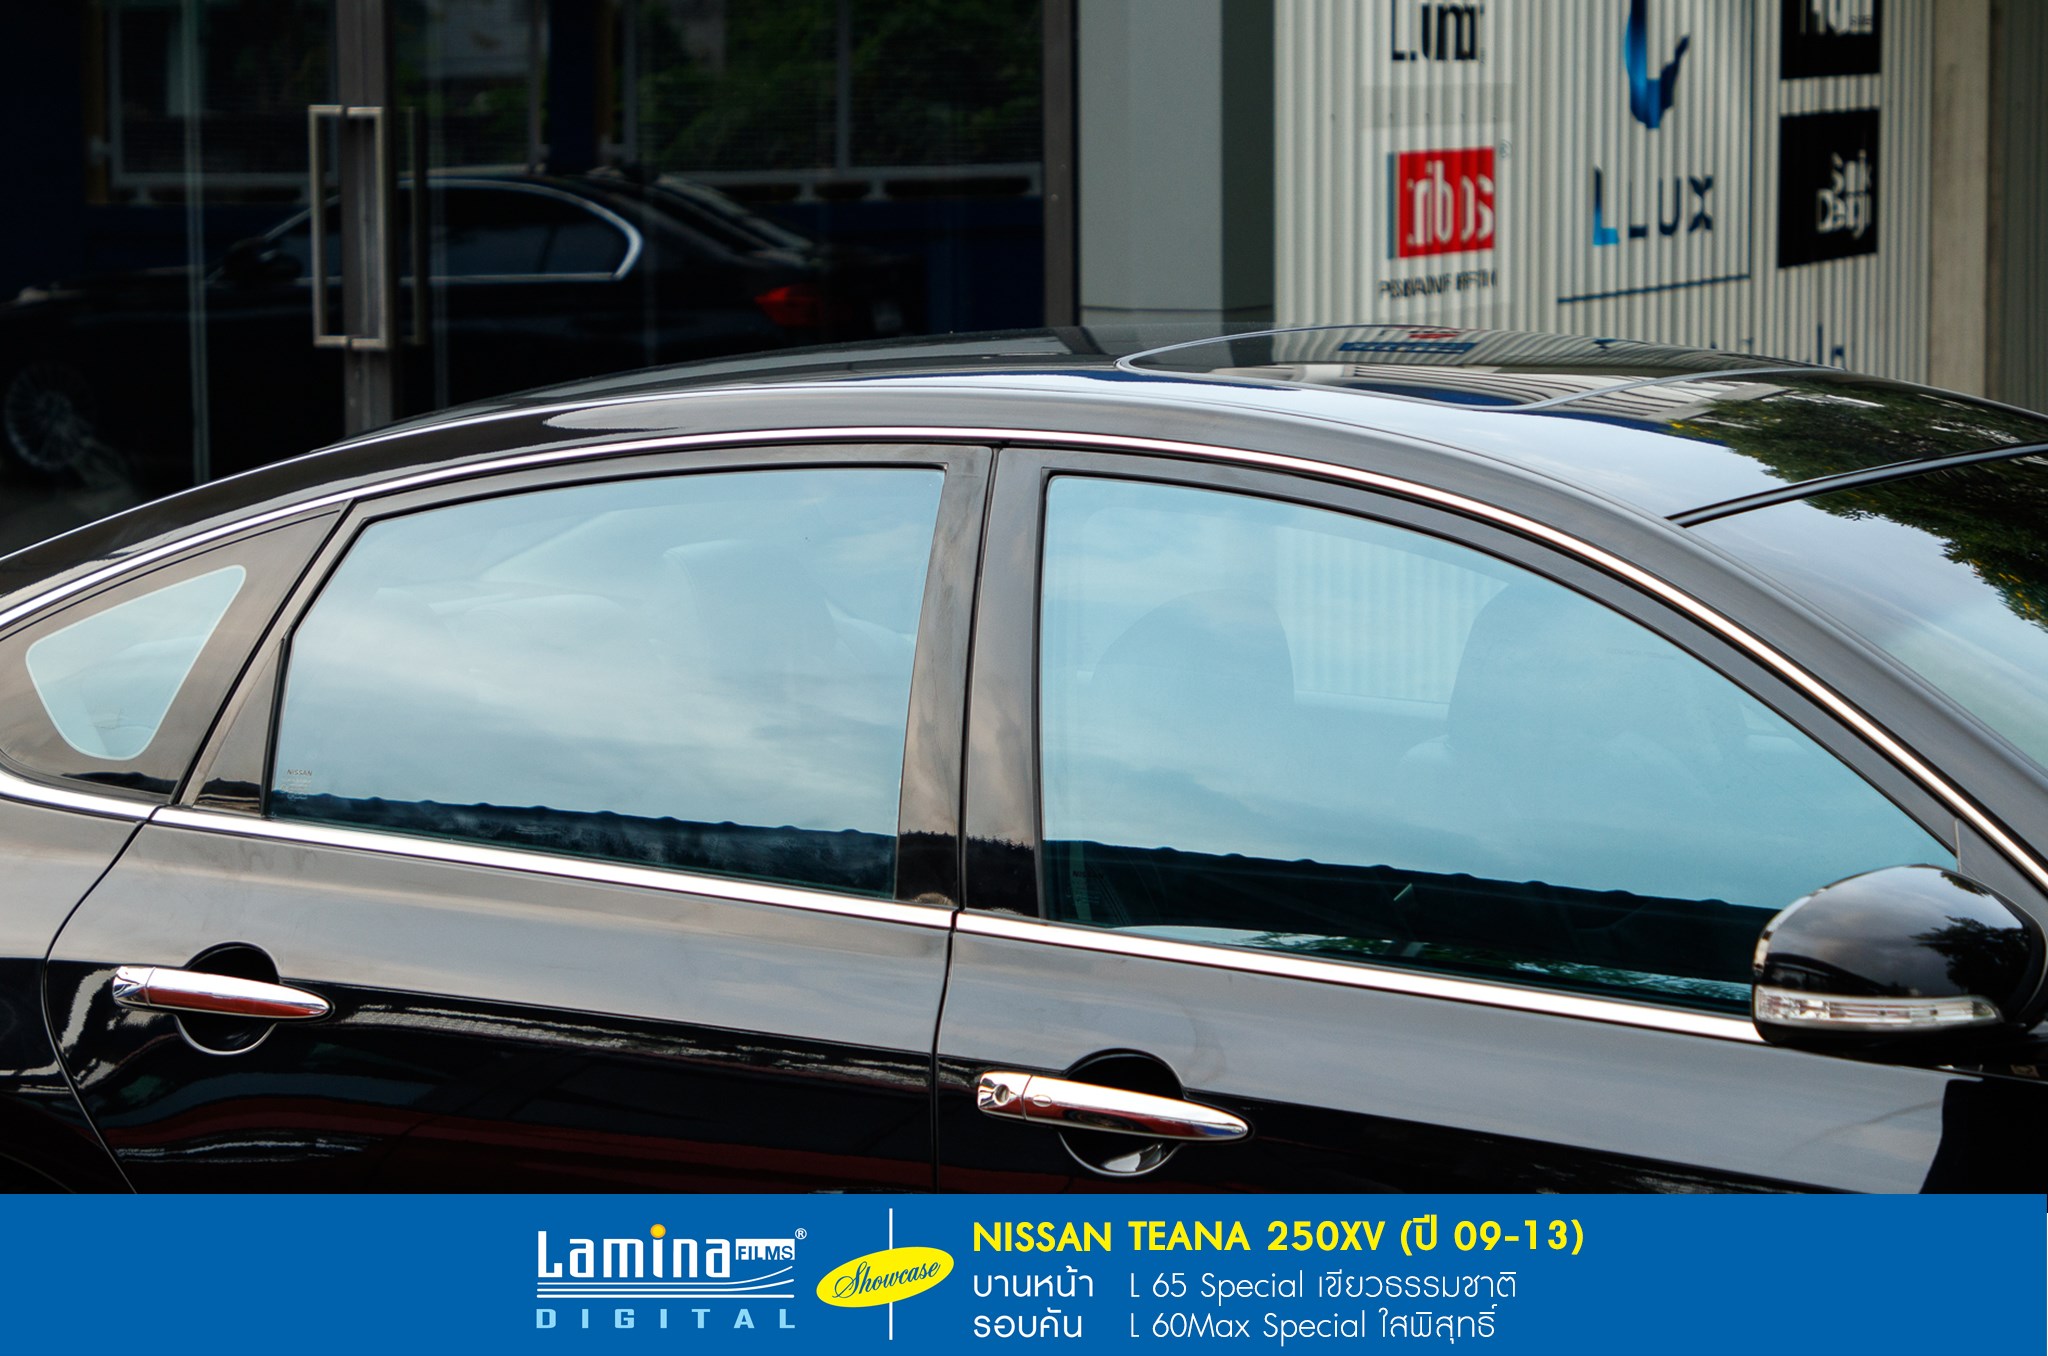 ฟิล์มใสกันร้อน lamina special series Nissan Teana 250xv 3